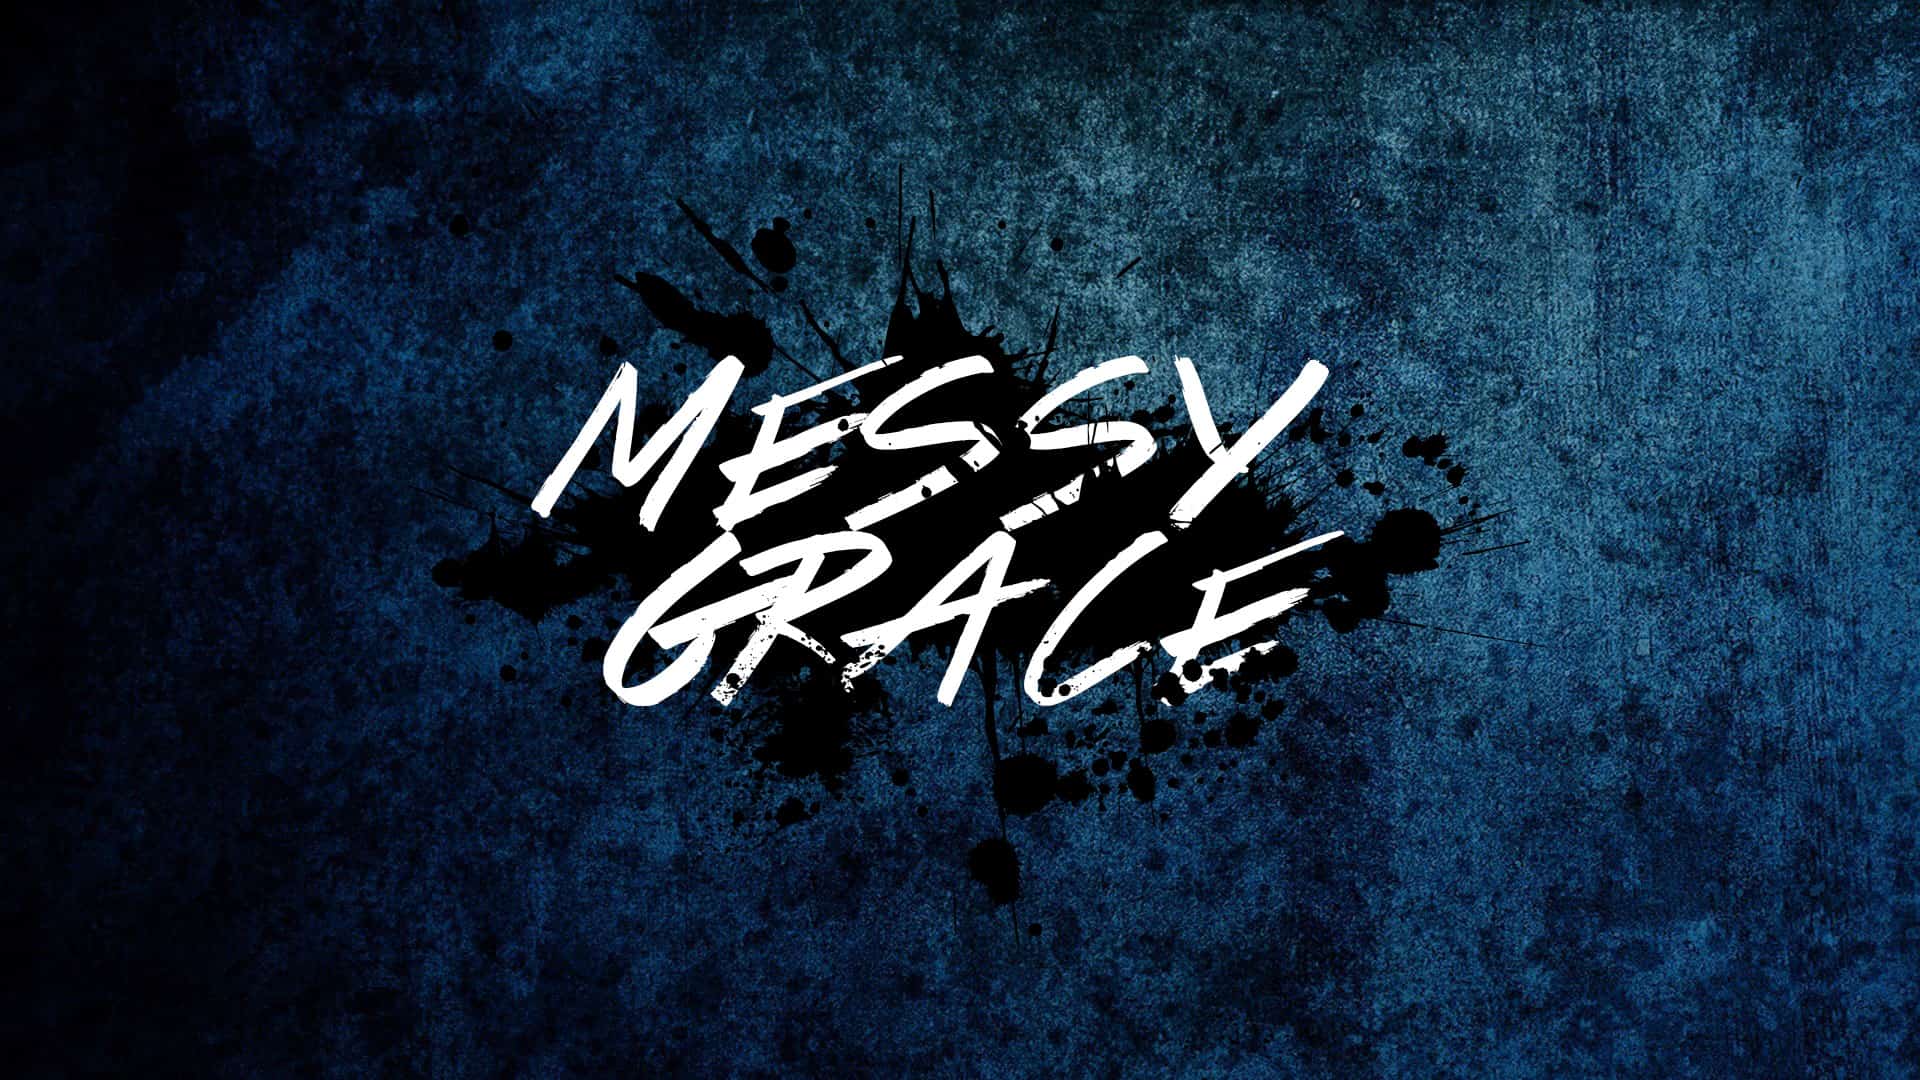 Messy Grace